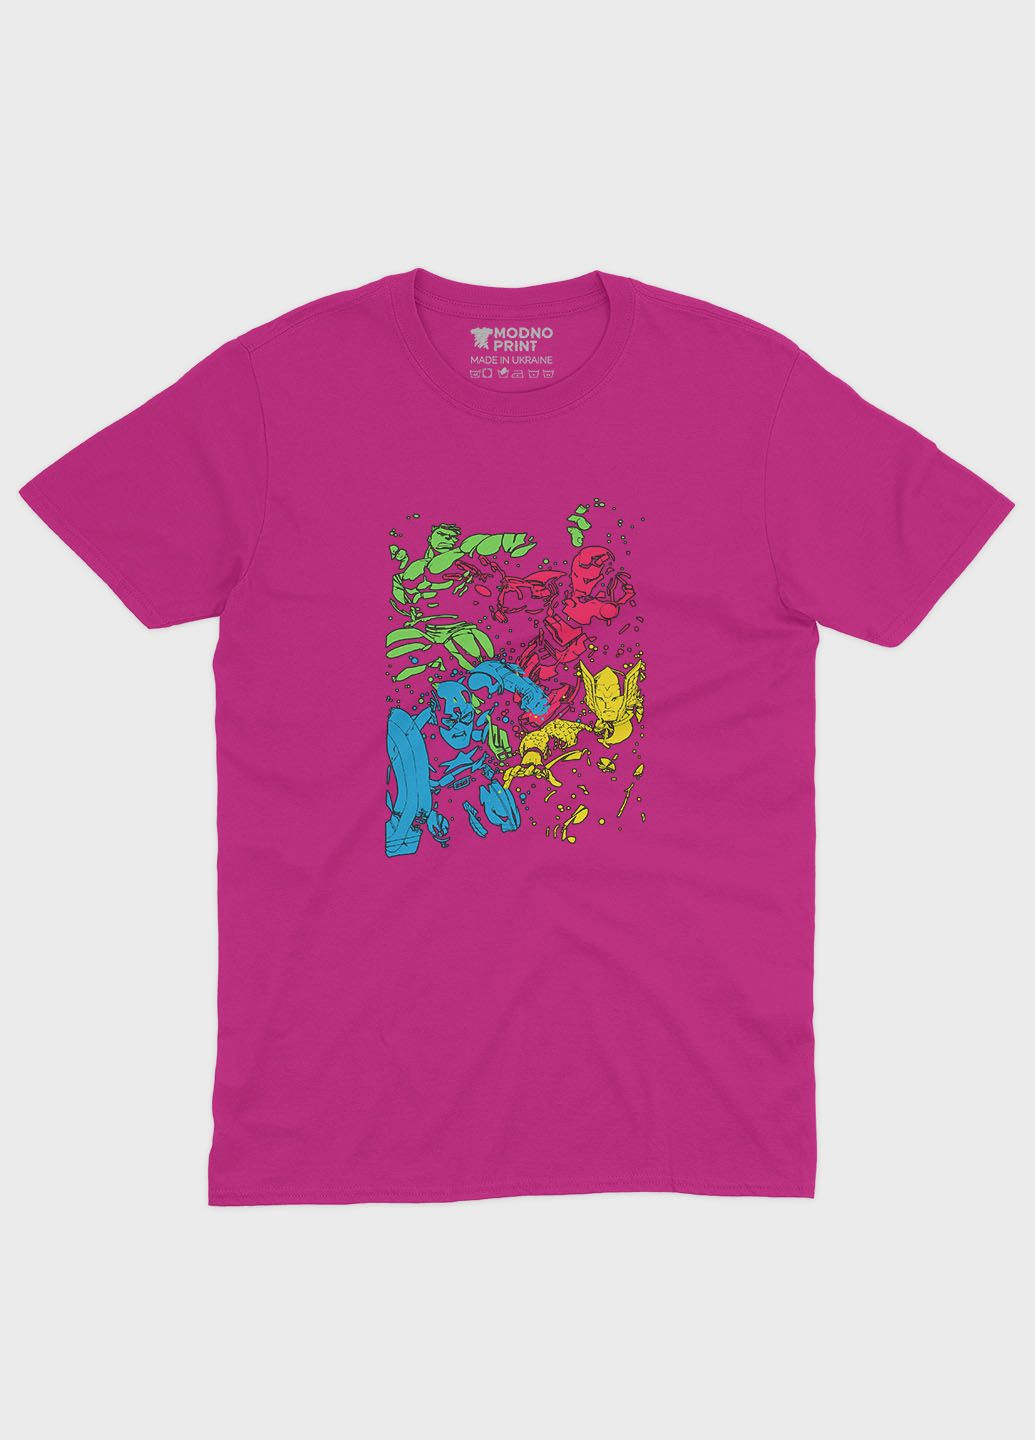 Розовая демисезонная футболка для девочки с принтом супергероями - мстители (ts001-1-fuxj-006-025-002-g) Modno